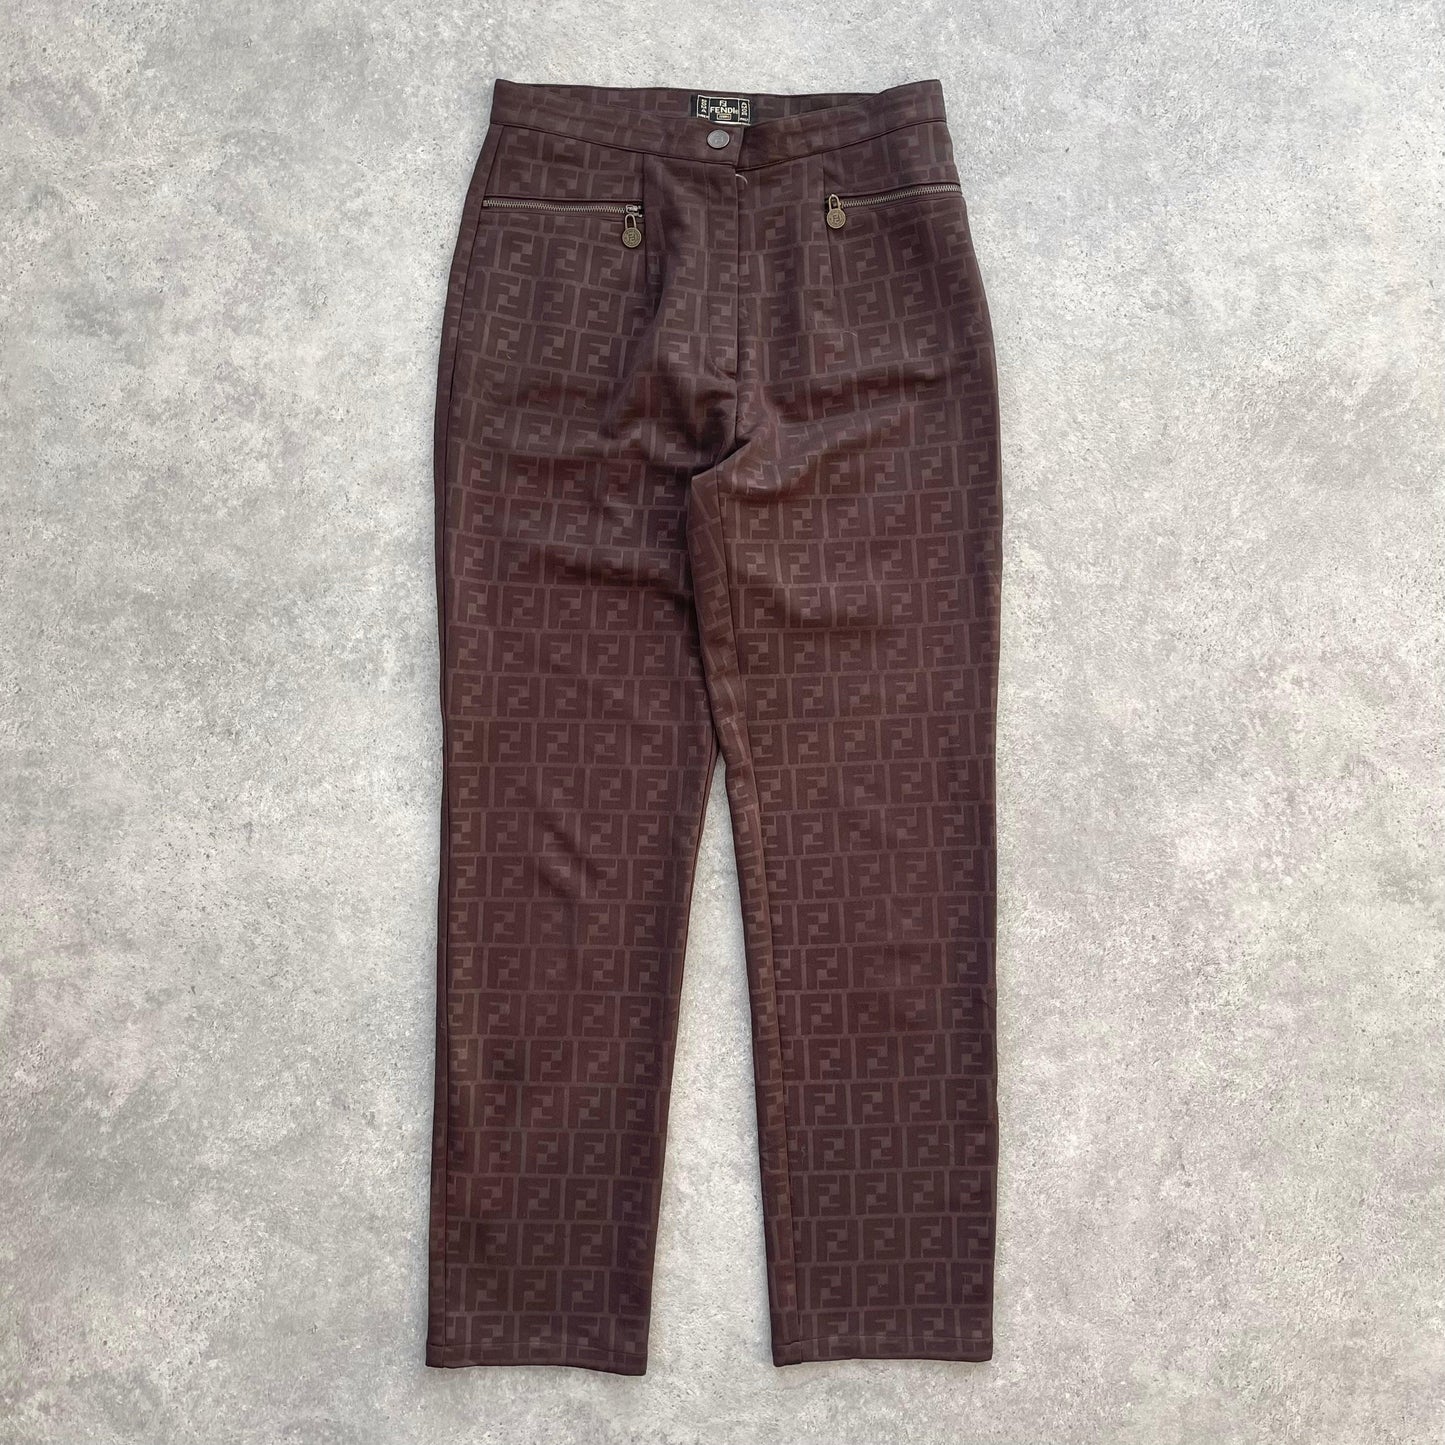 Fendi RARE 2000s zucca monogram women’s trousers (30”x30”) - Known Source